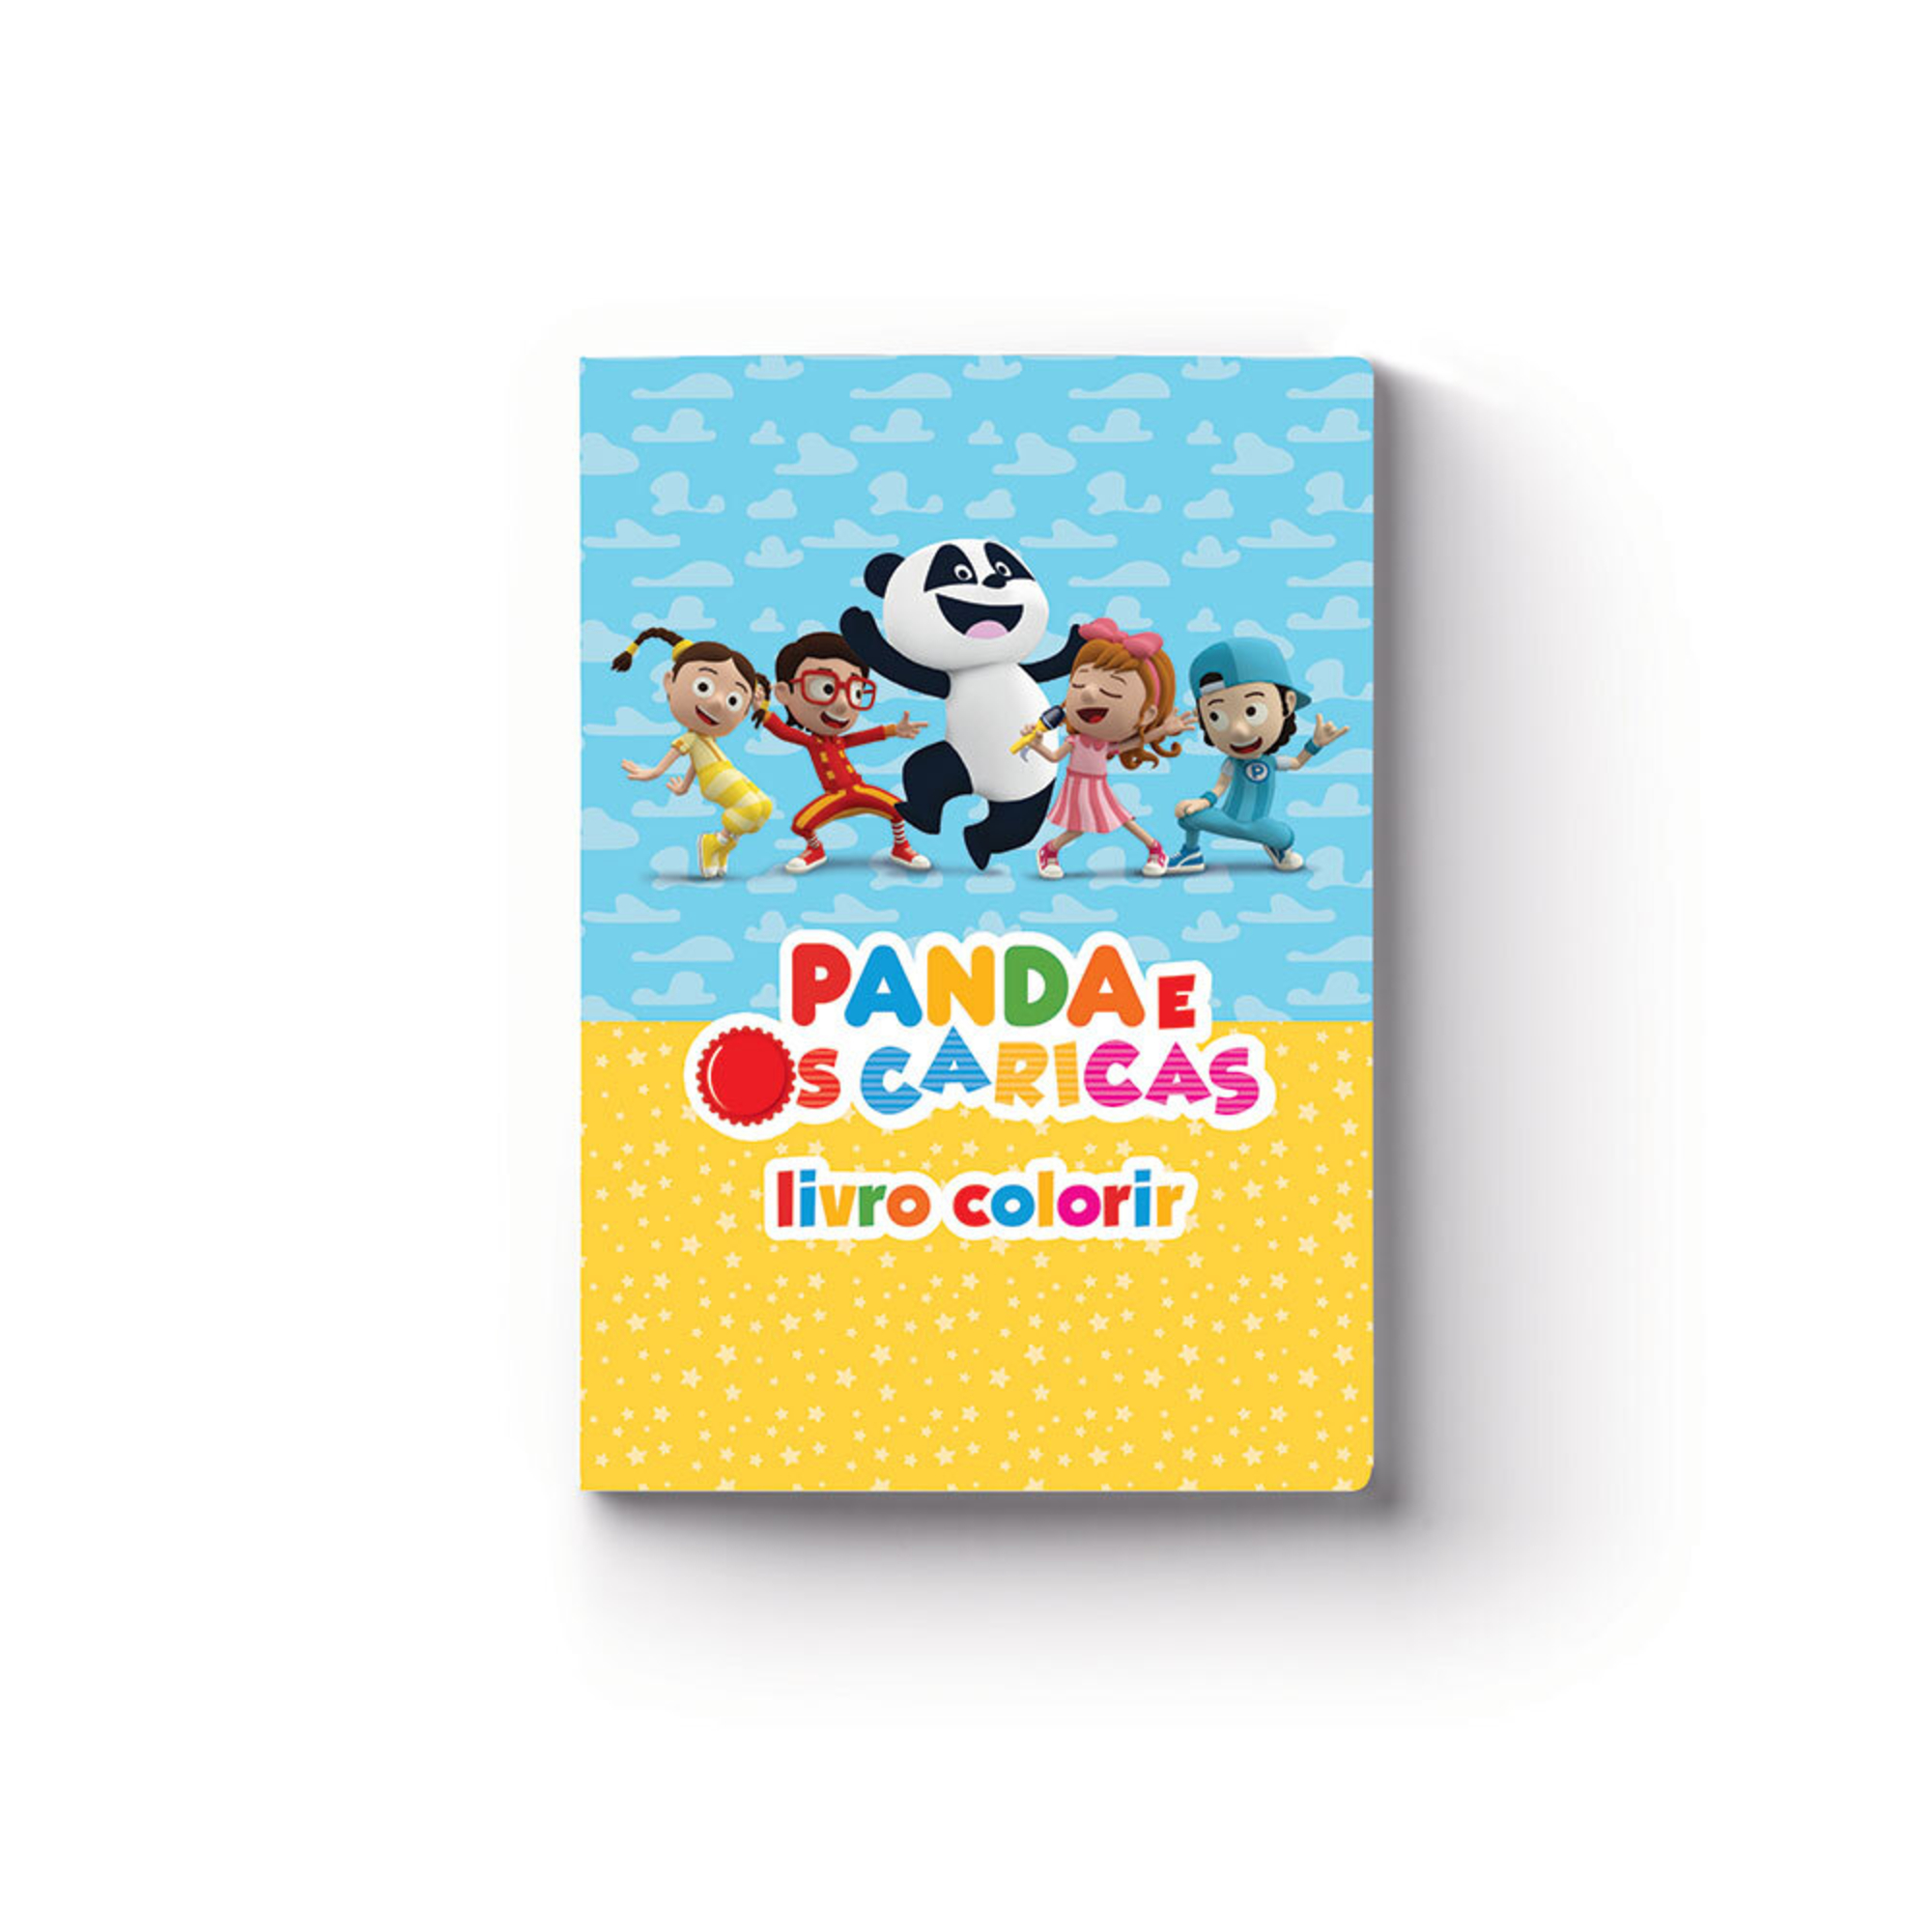 PANDA E OS CARICAS Livro para Colorir, A4, 20 Folhas - 802431 em